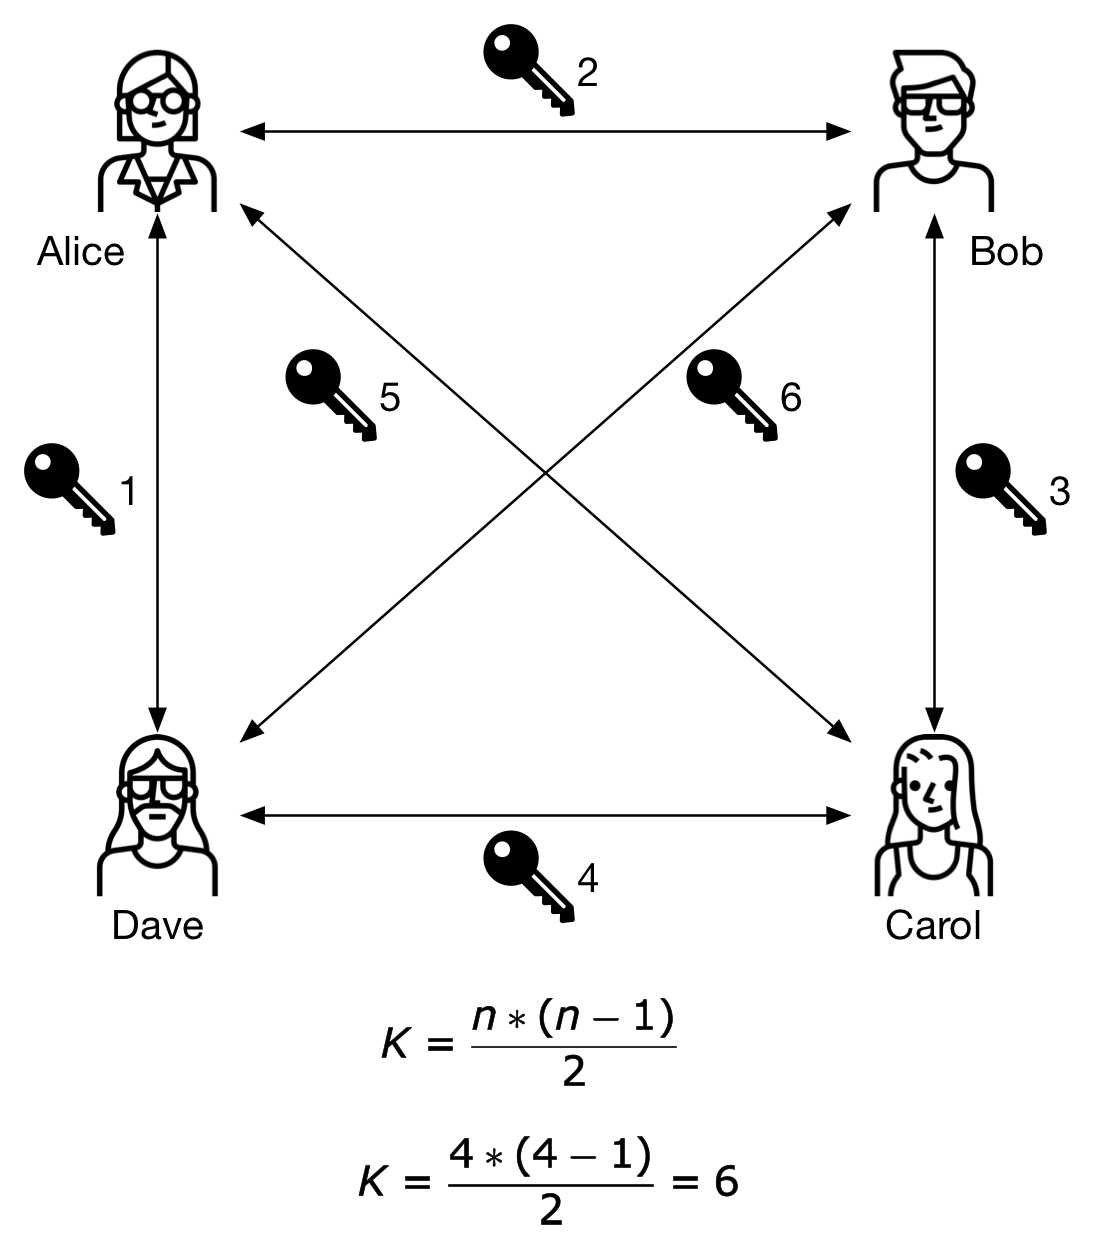 Figure 3 - A small group uses symmetric keys